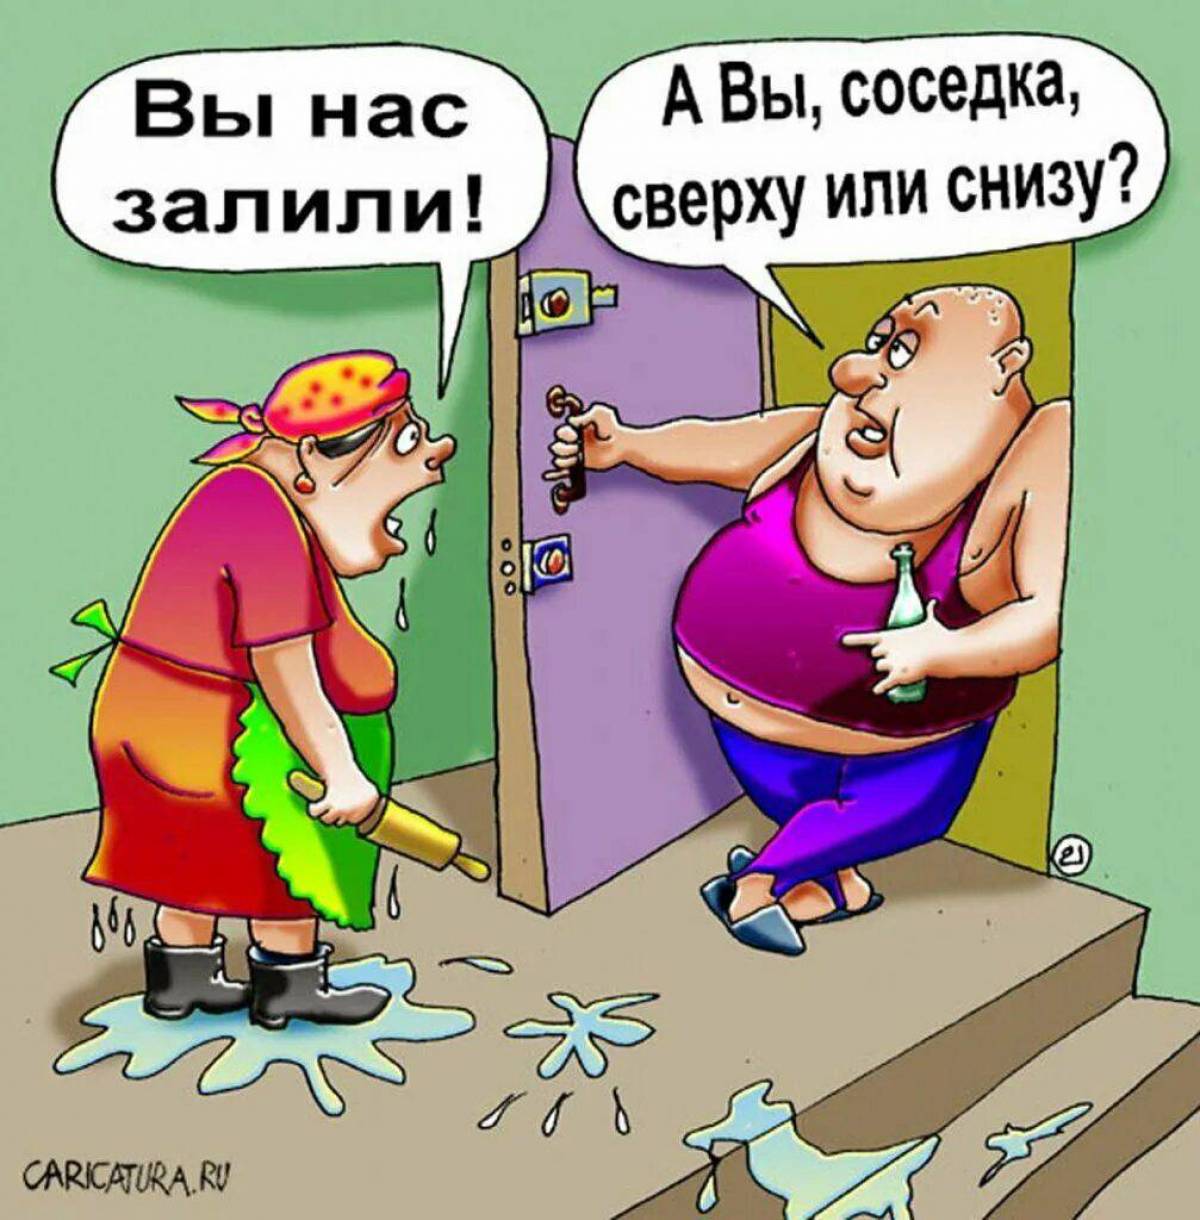 Русский сосед хочет сосед. Соседи карикатура. Приколы про соседей. Шутки про соседей. Соседи юмор.